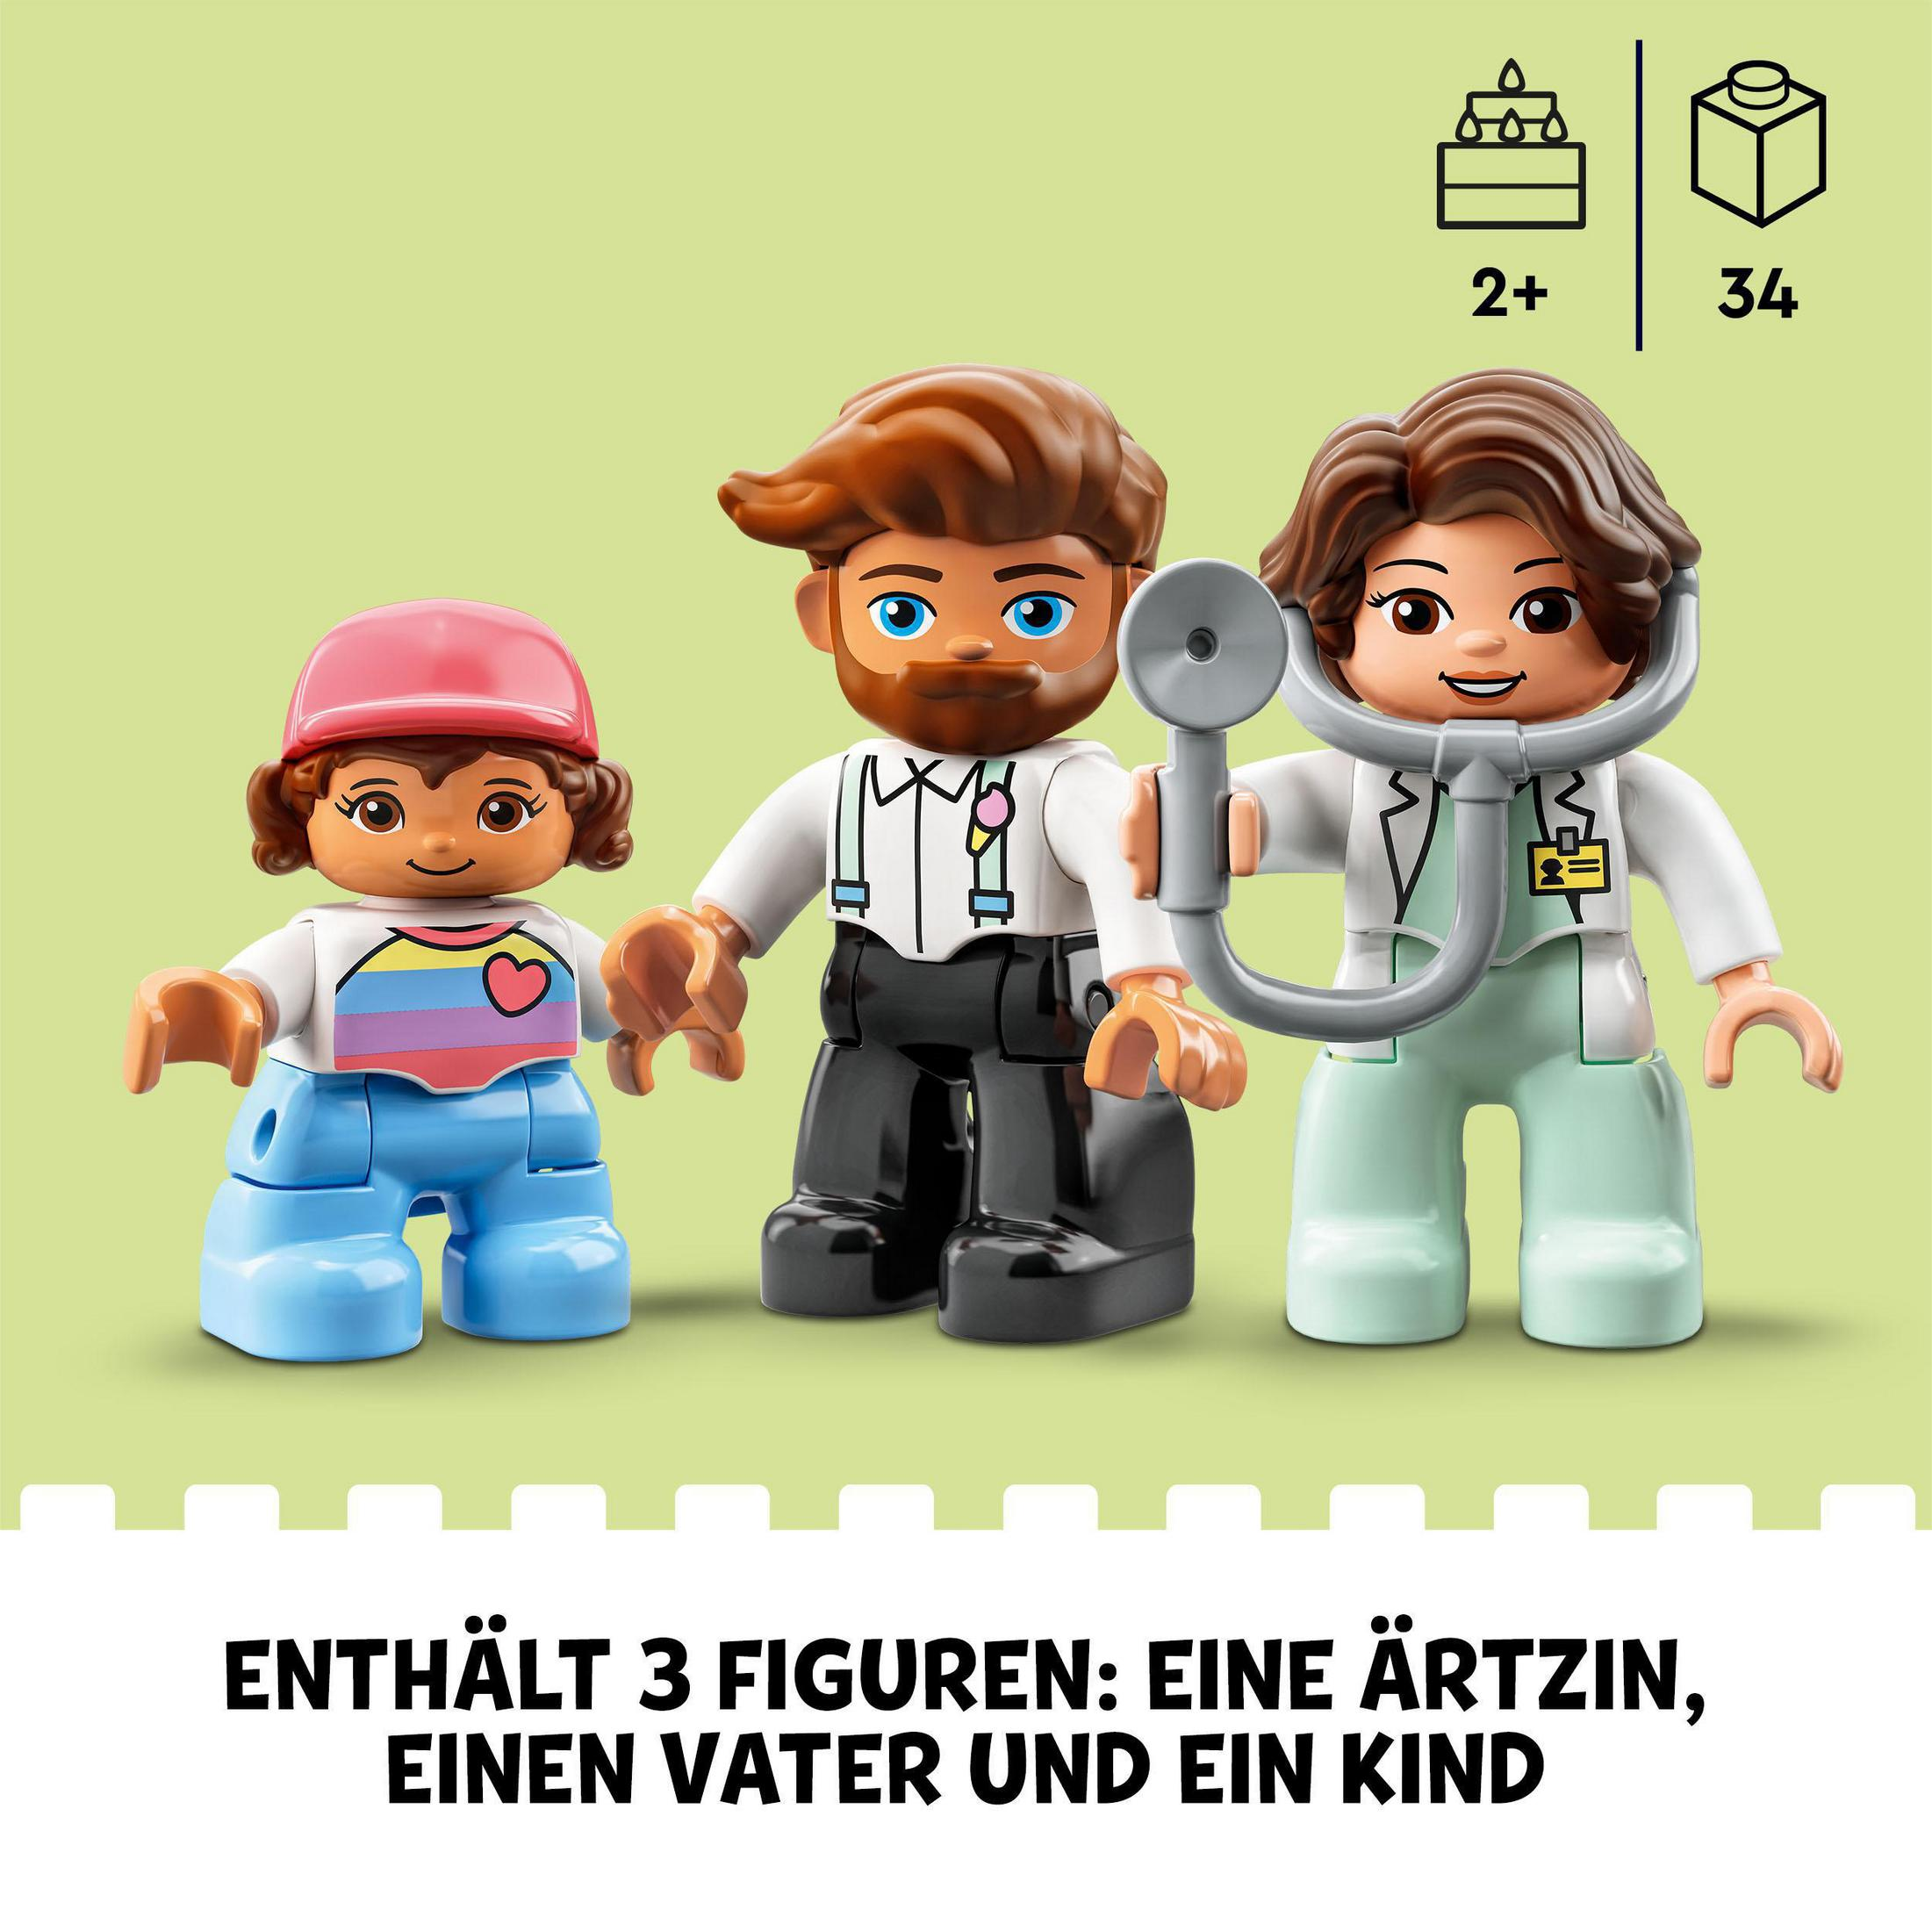 LEGO 10968 Arztbesuch Duplo Lego Angabe Keine Duplo